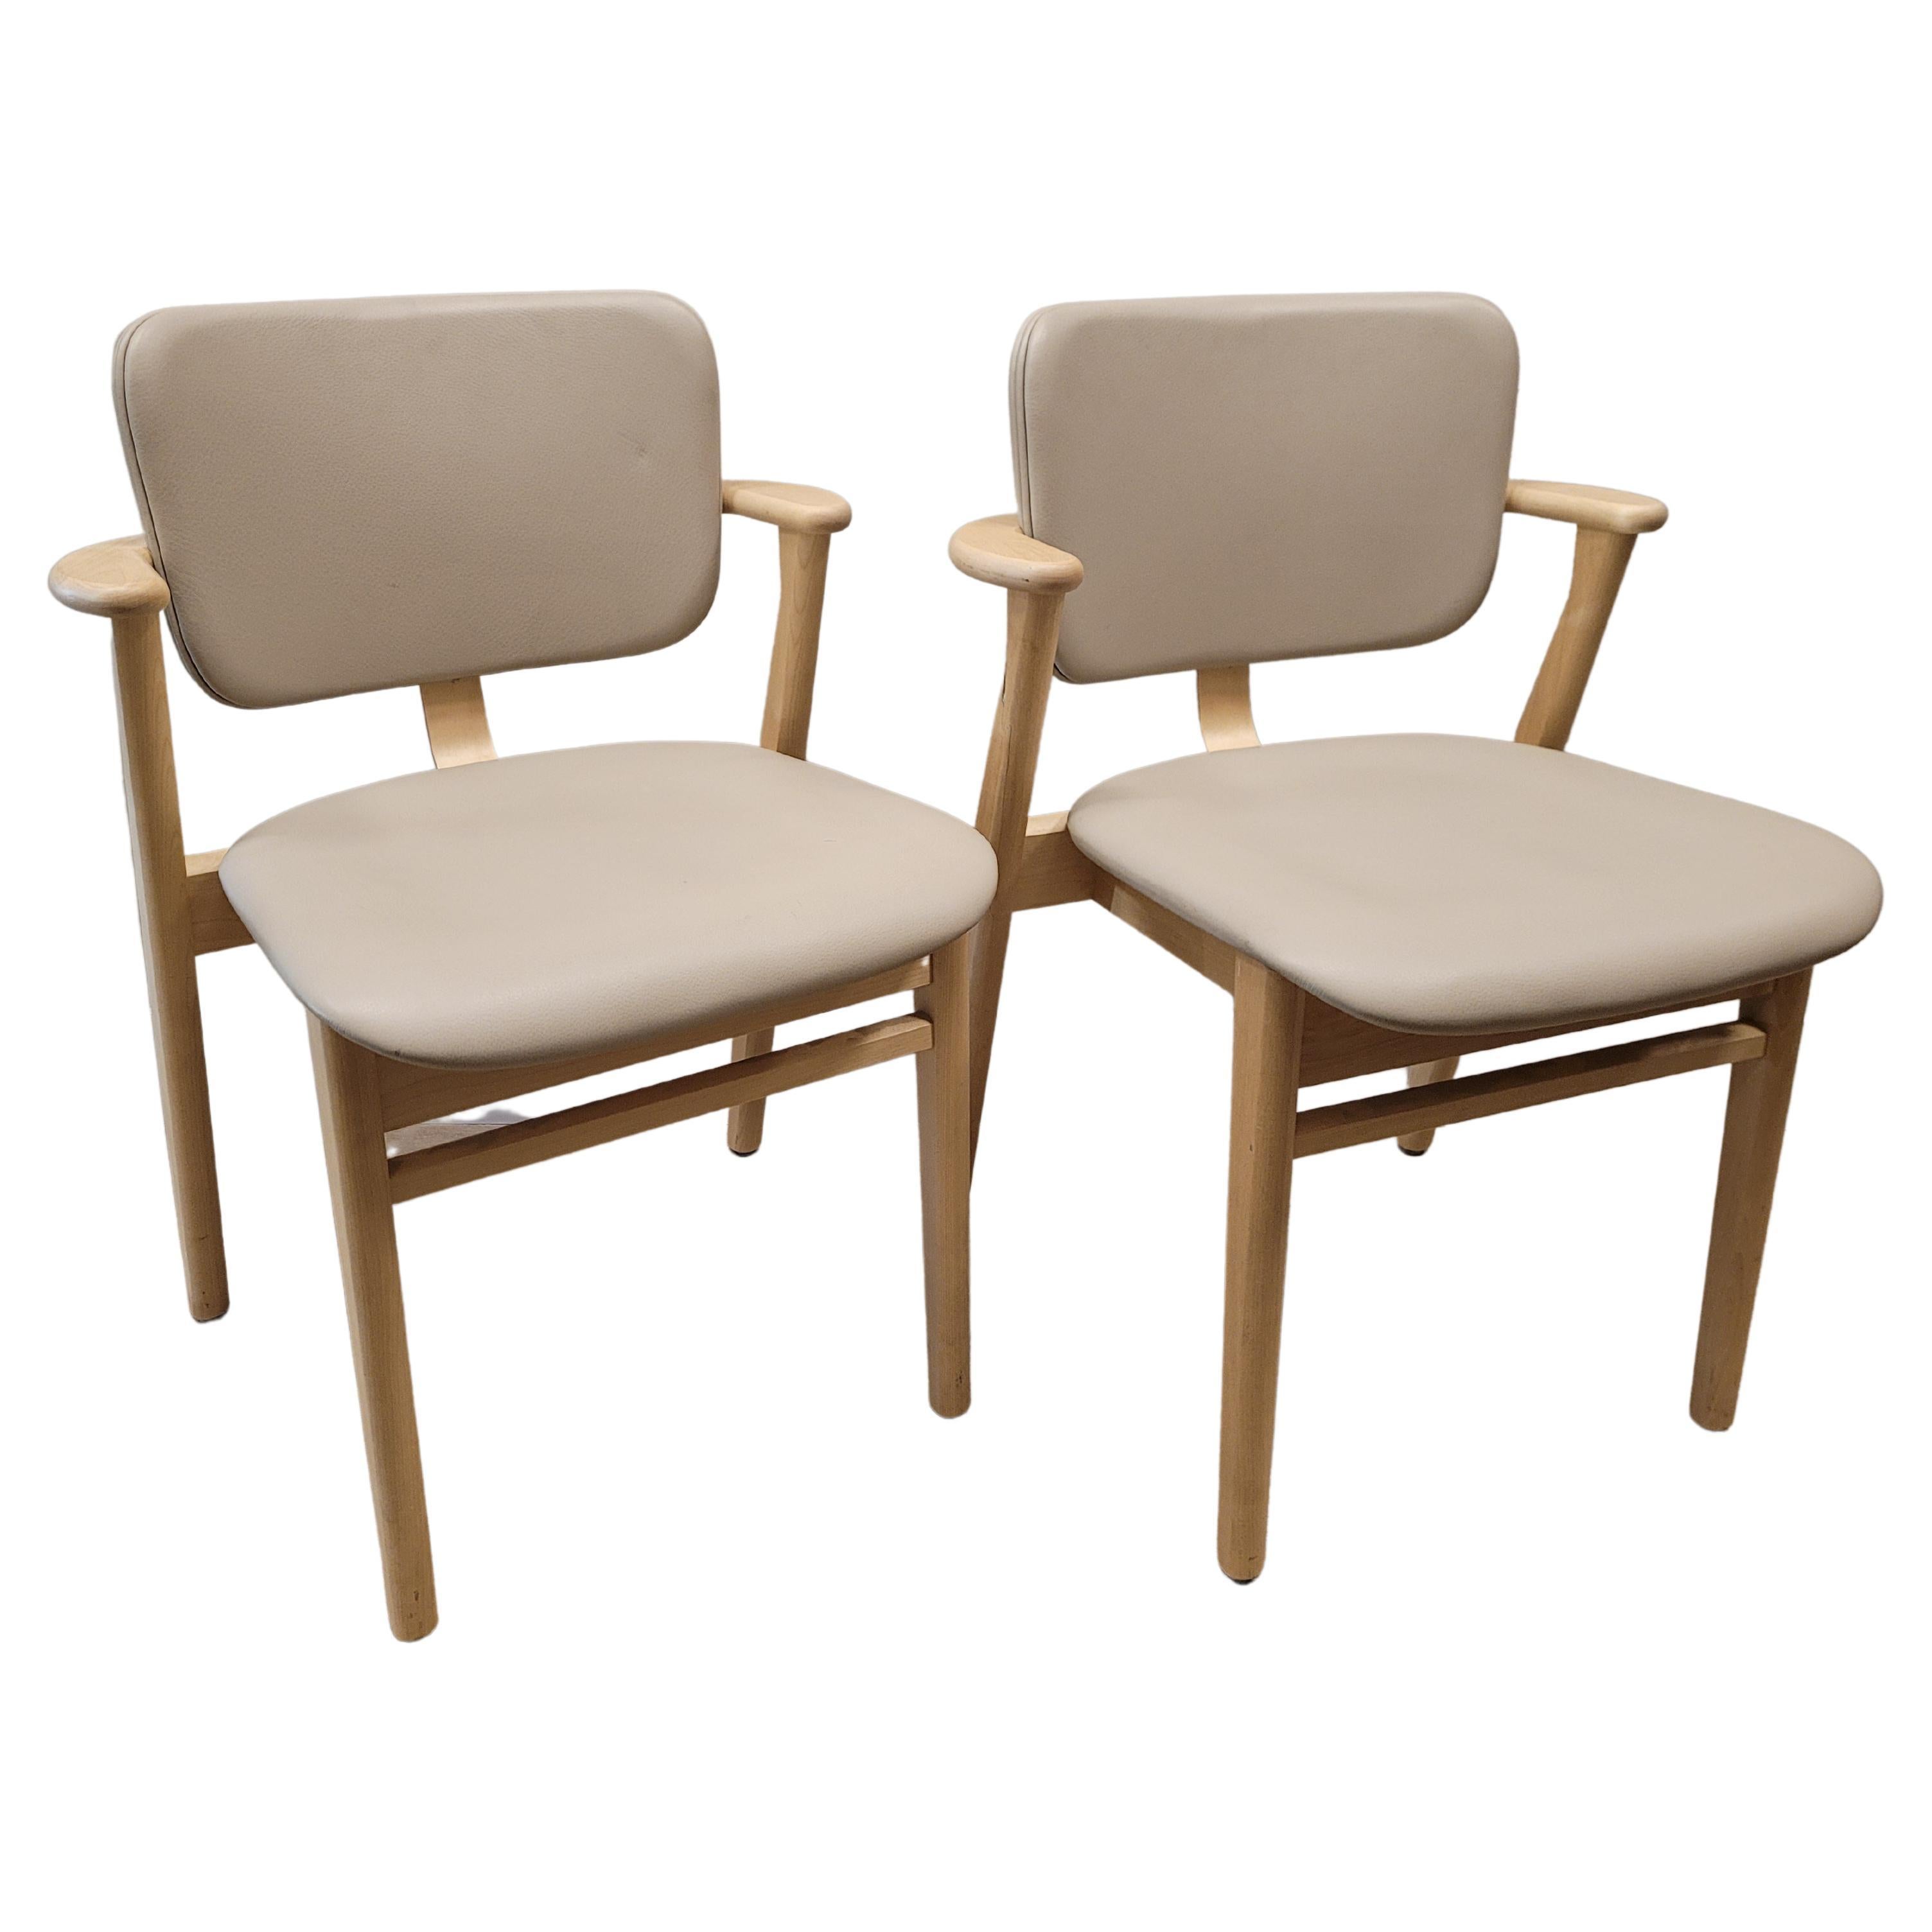  Finnish   Grey beige  chair  by Ilmari Domus beige leather Birch wood For Sale